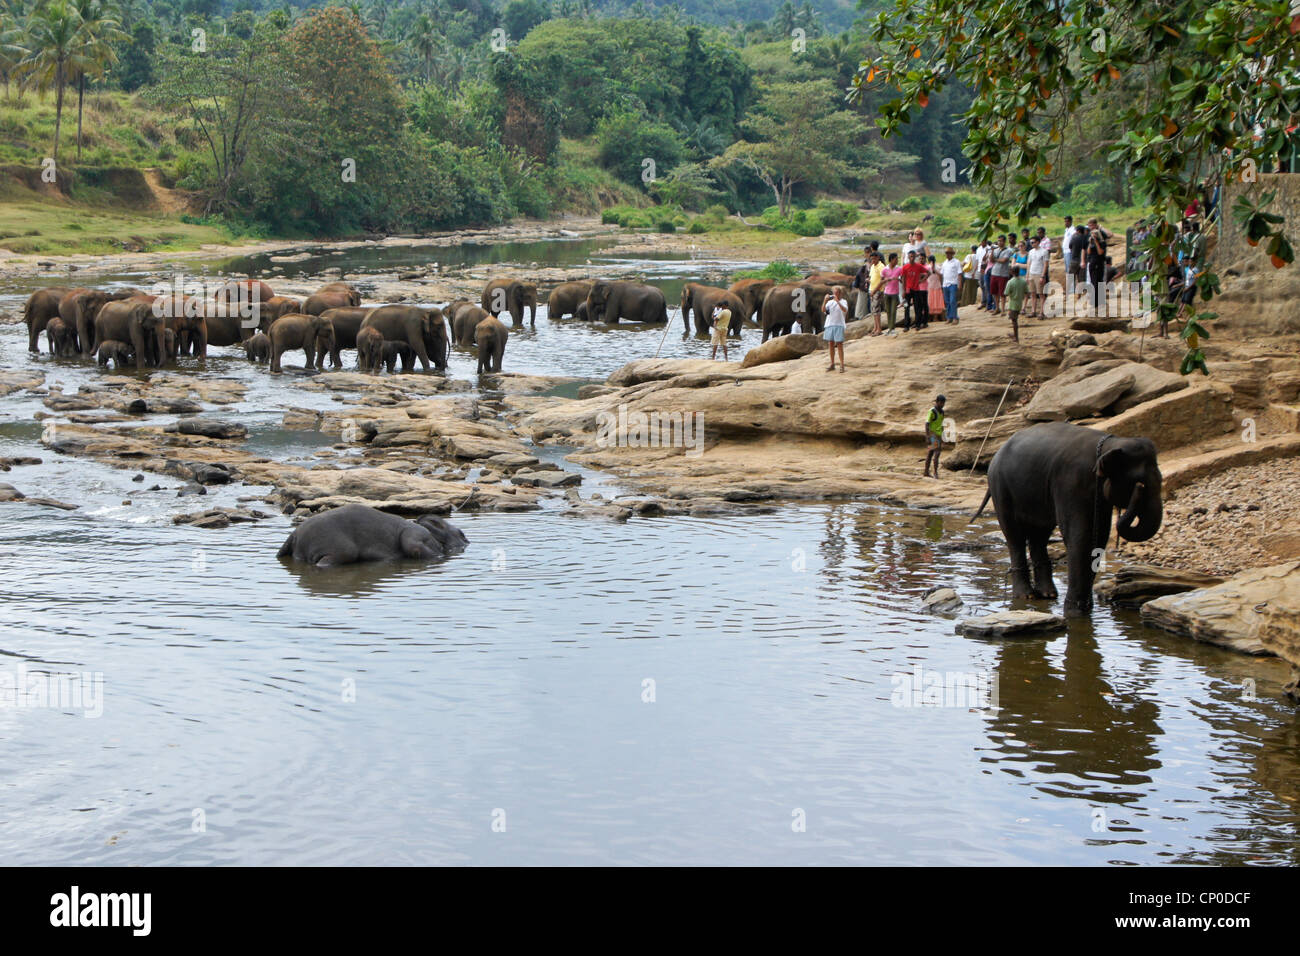 Asian elephants and tourists, Pinnawala Elephant Orphanage, Kegalle, Sri Lanka Stock Photo